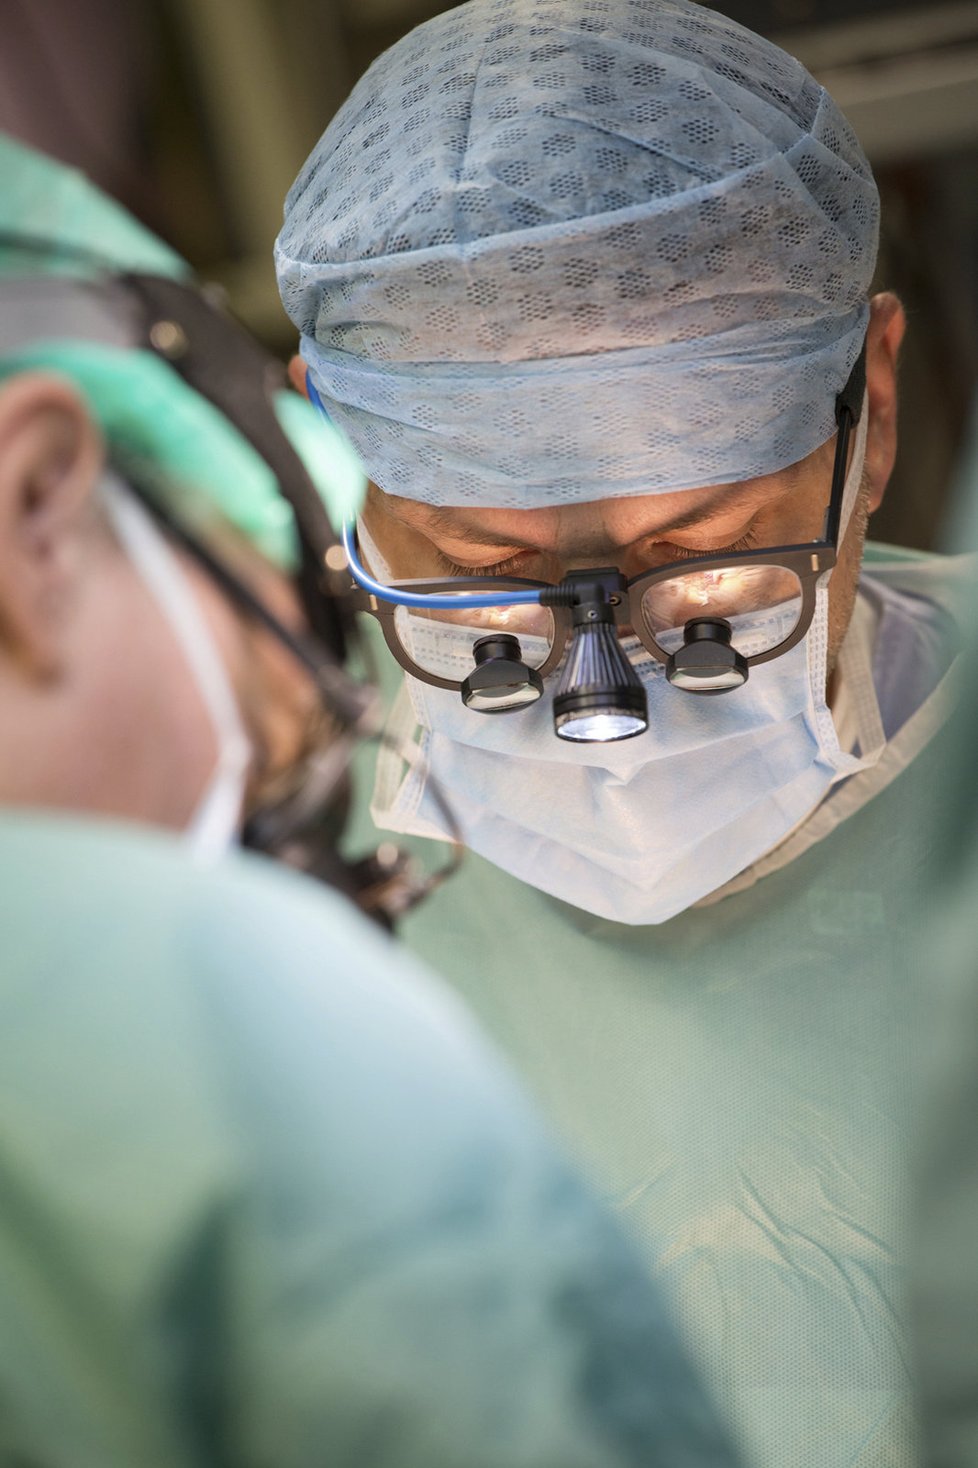 Unikátní operace provádí lékaři pražského IKEMU. V tomto případě pracují na transplantaci dělohy, která se v Čechách uskutečnila poprvé v roce 2016.